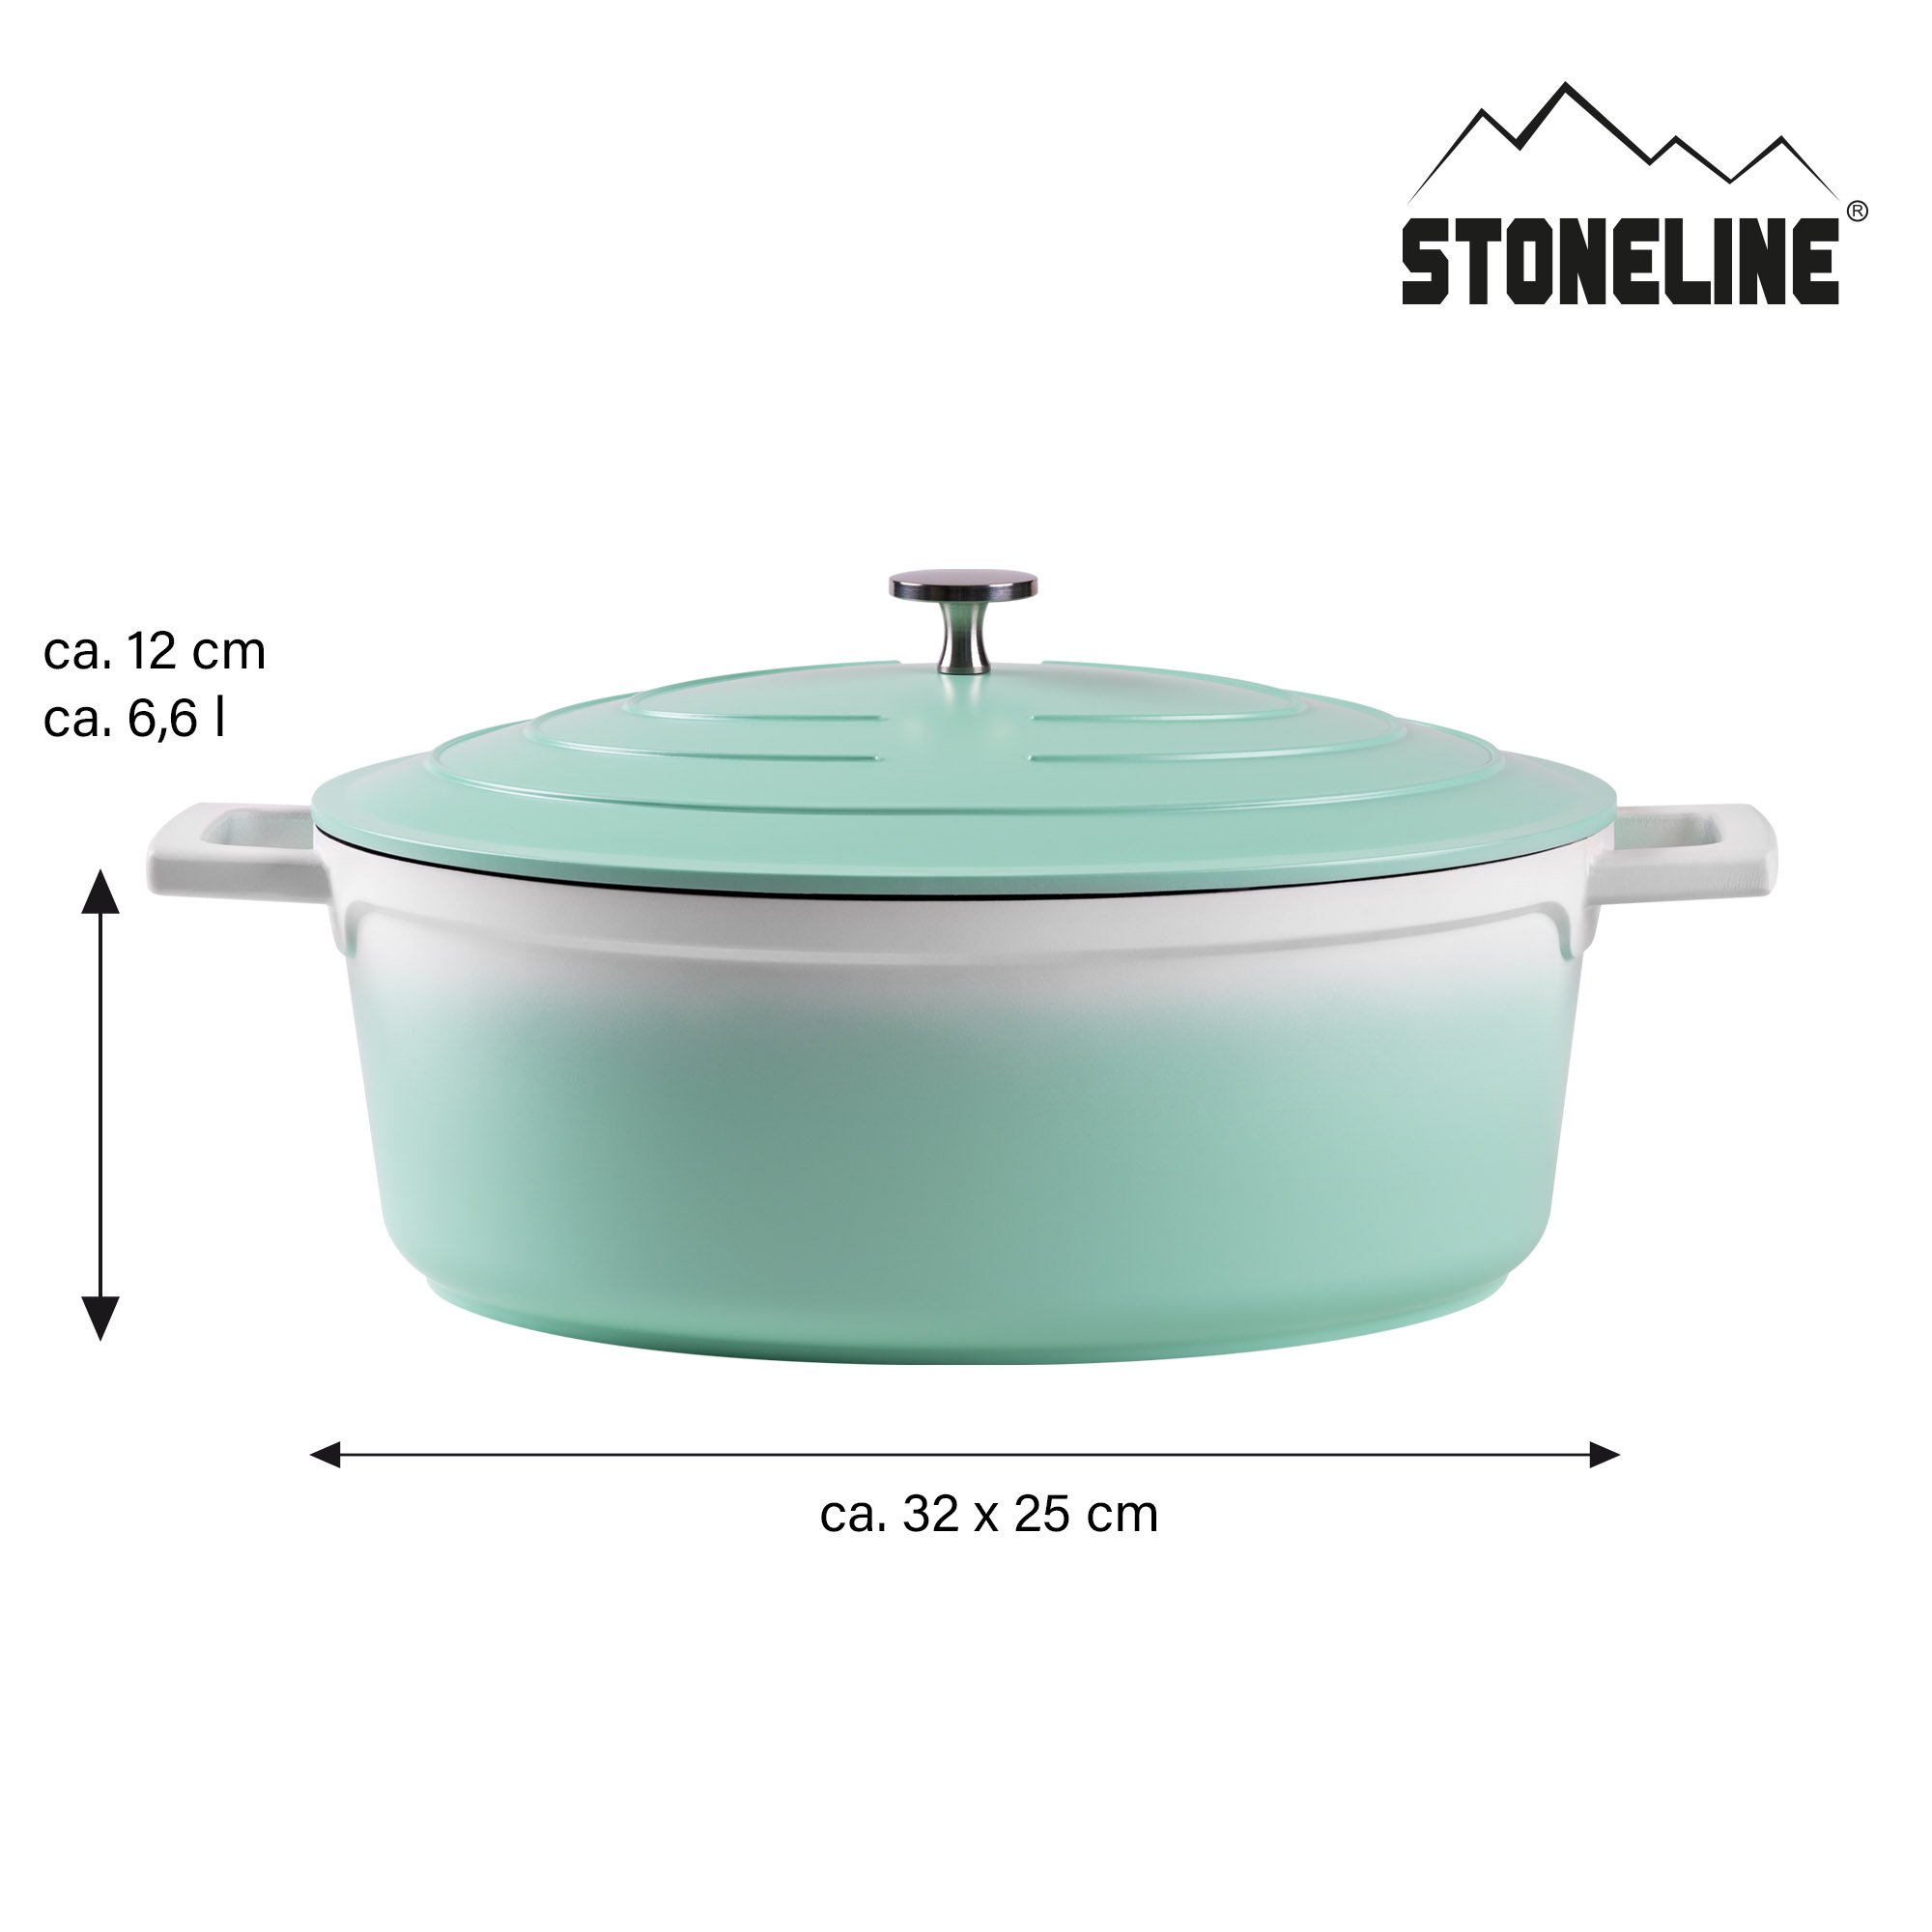 STONELINE® Mint Gourmet asador 32x25 cm con tapa, apto para horno e inducción, antiadherente